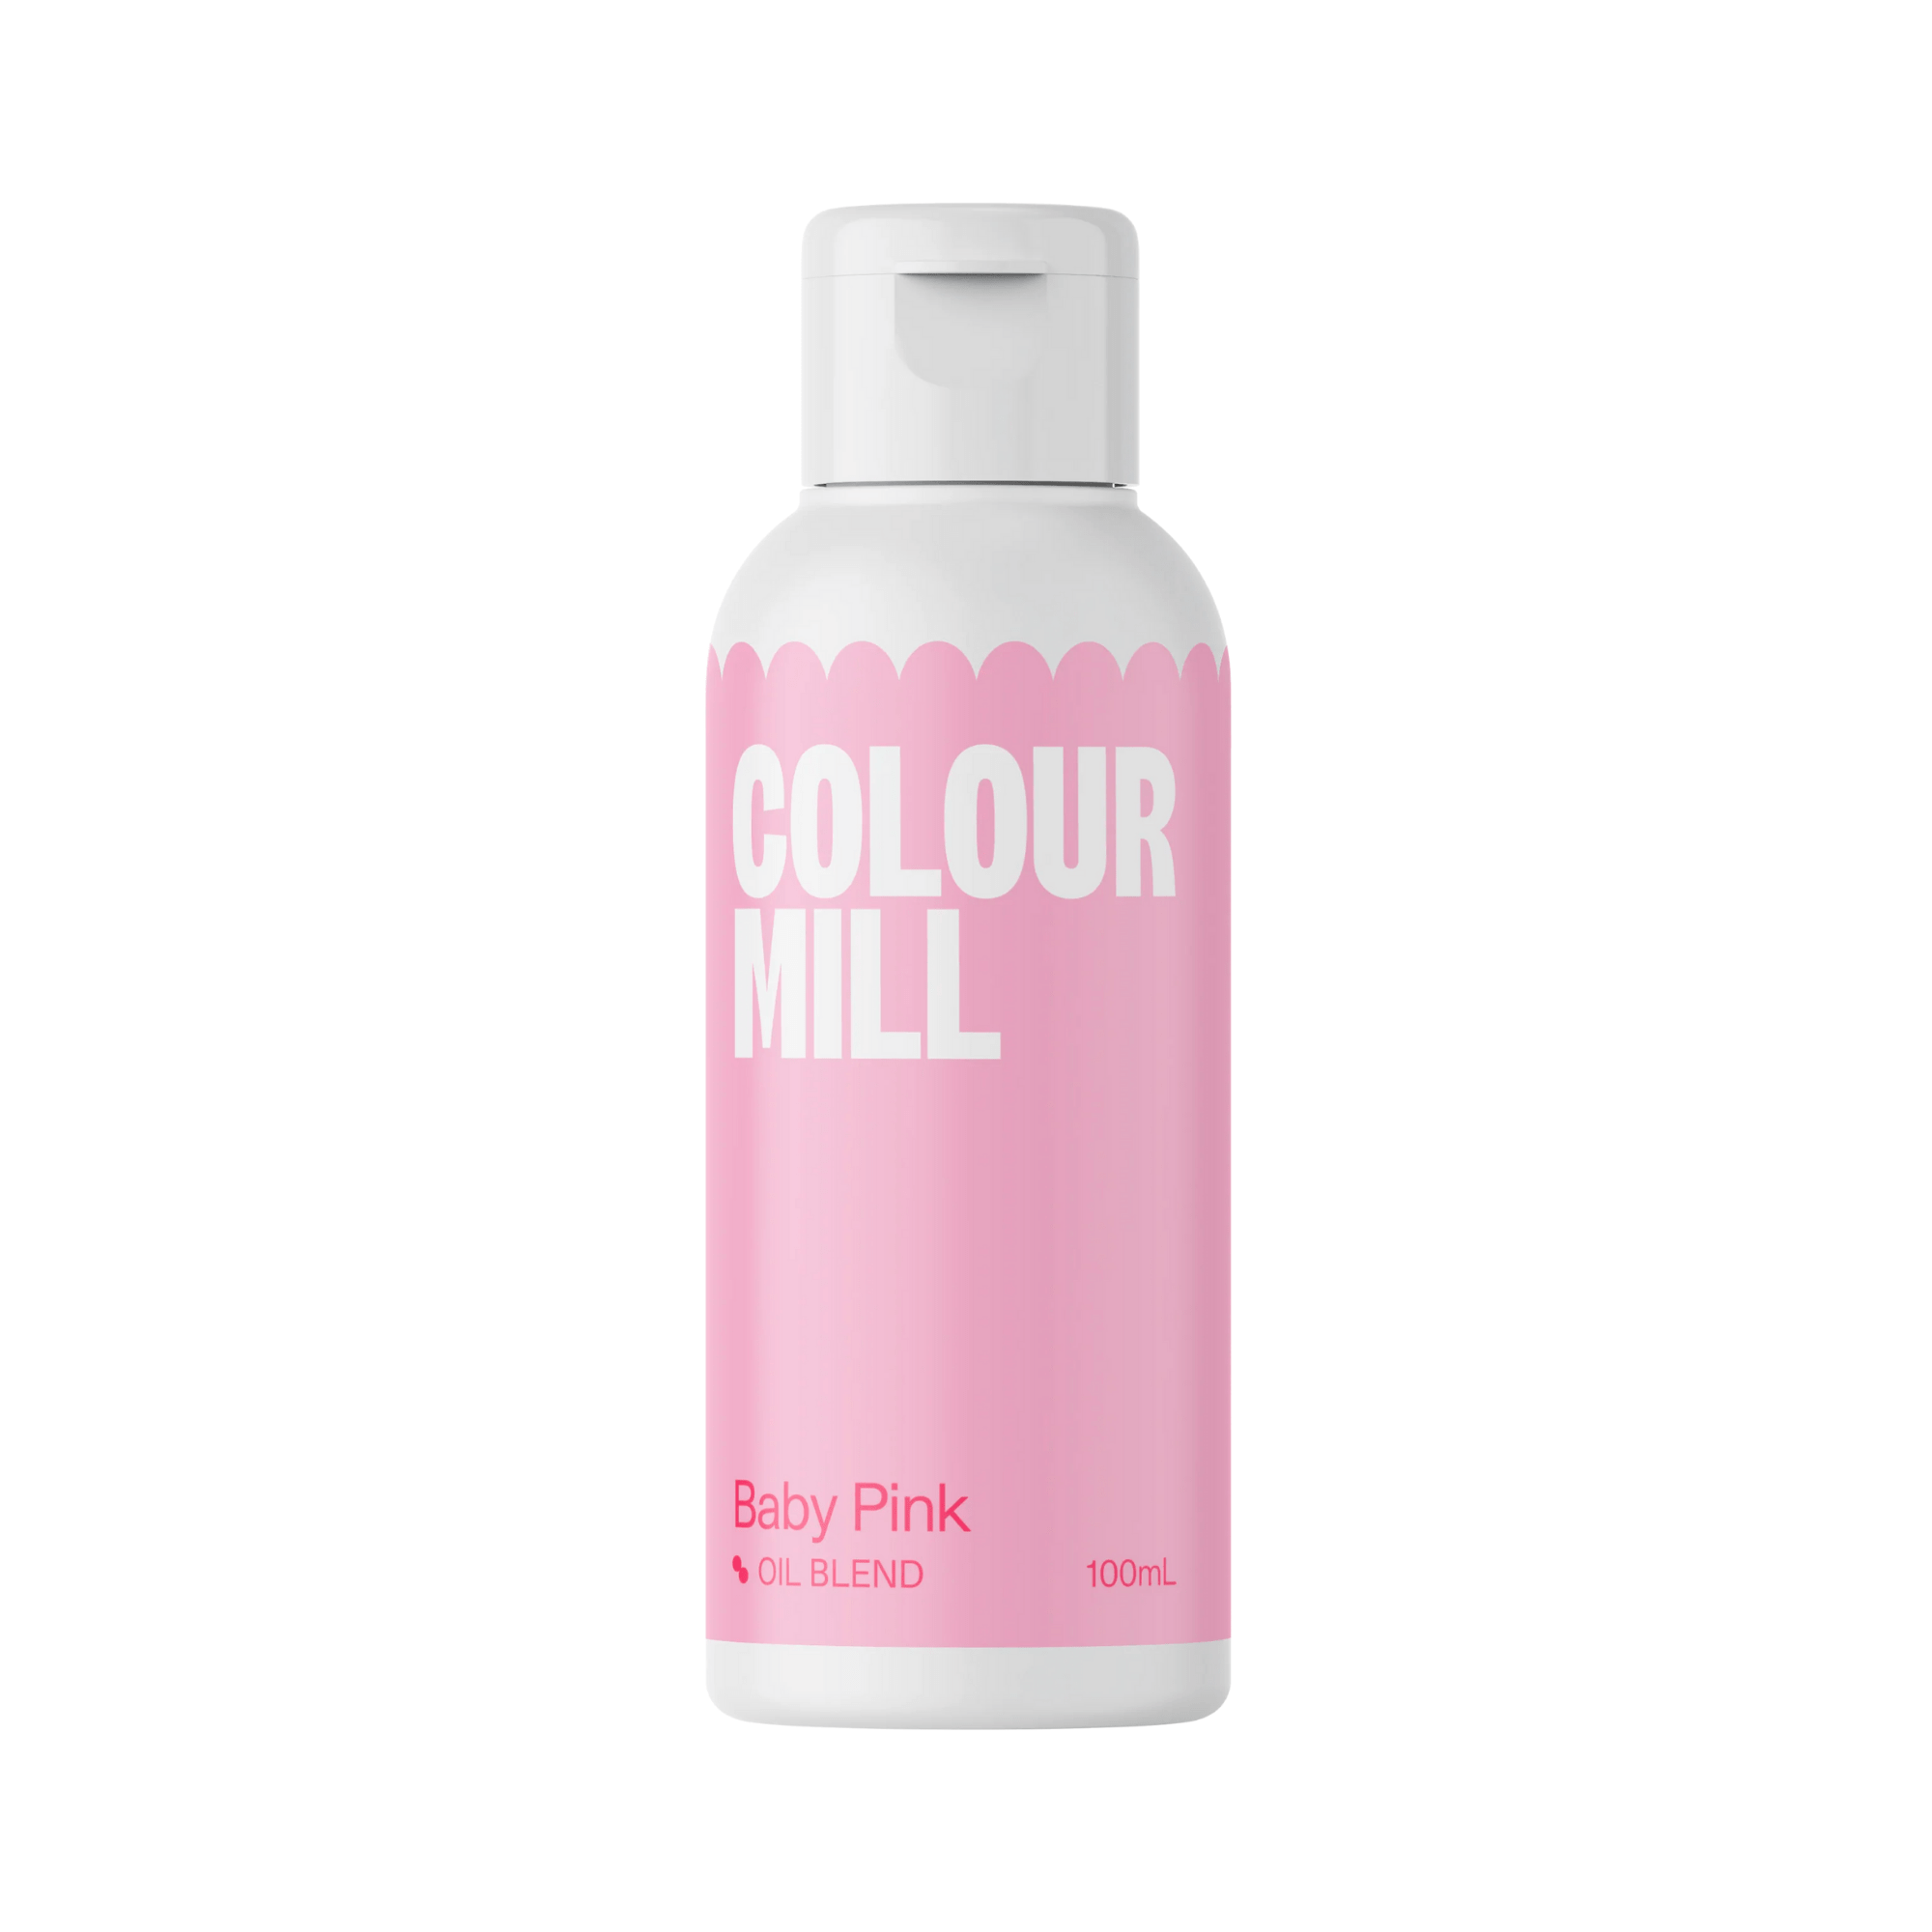 Happy Sprinkles Sprinkles 100ml Color Mill Baby Pink - Oil Blend